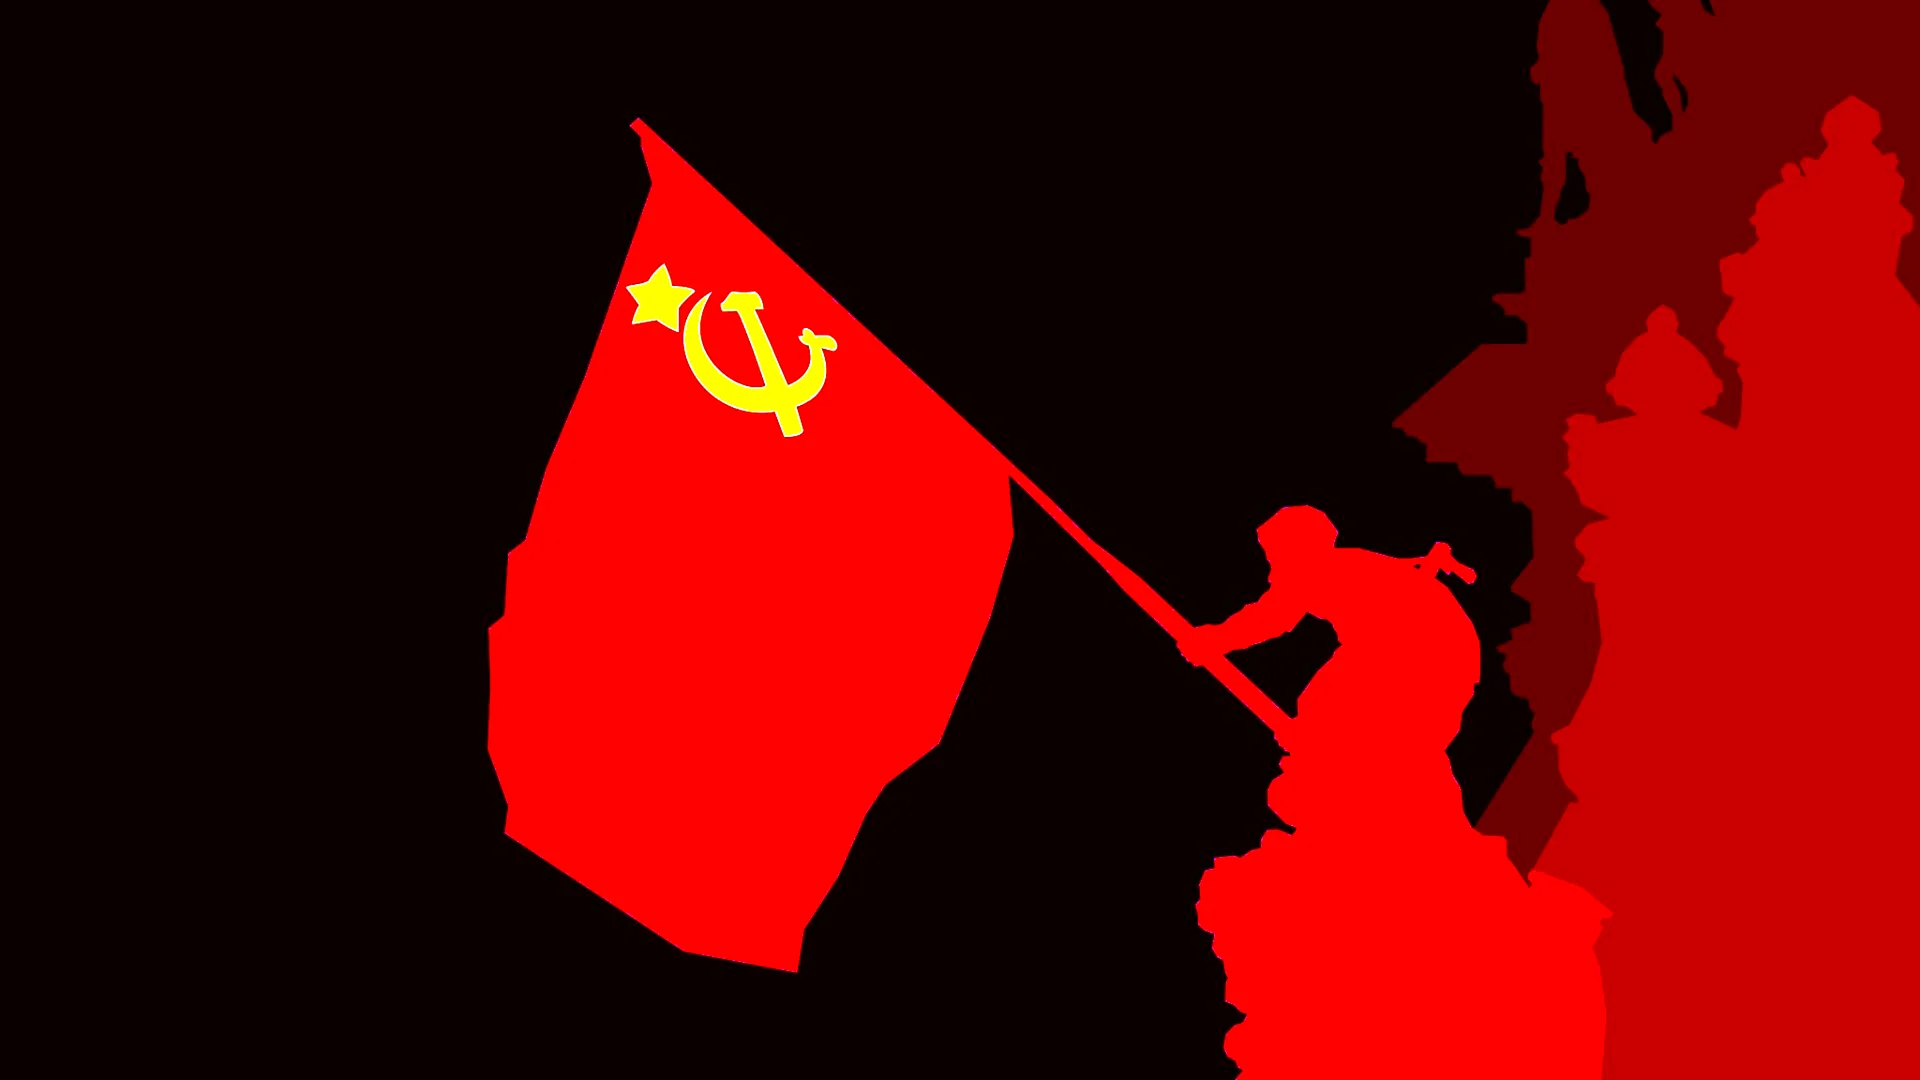 Флаг советского Союза 1941